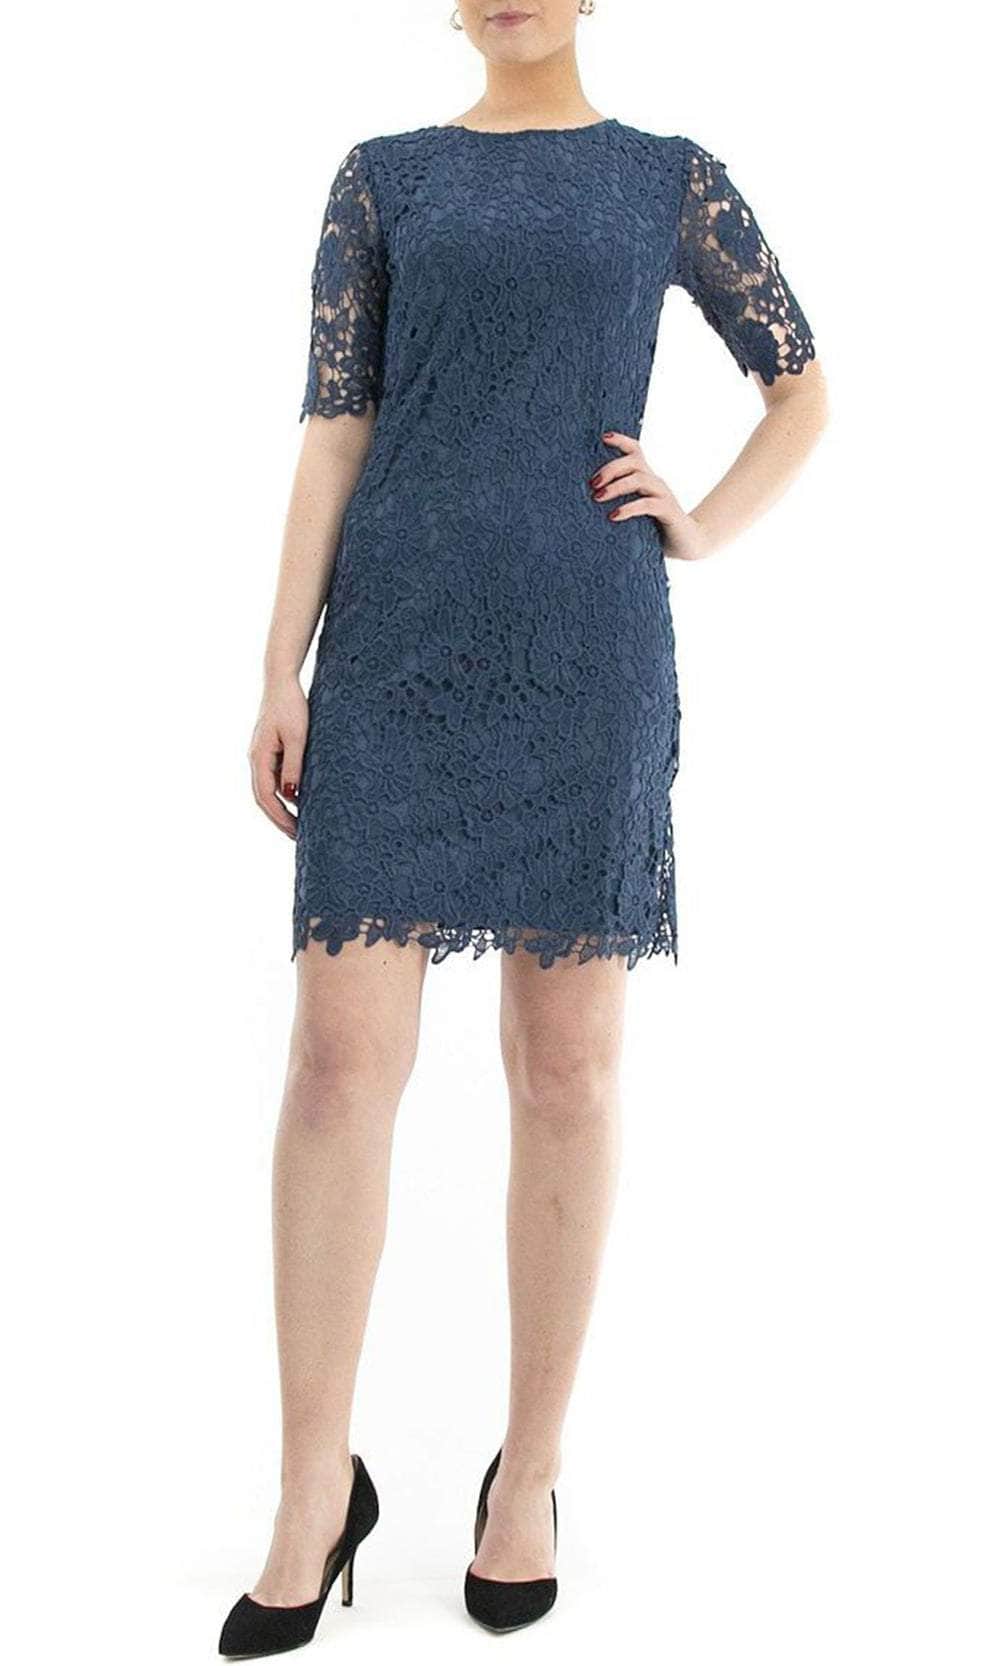 Nina Leonard L0474A - Lace Sheath Formal Dress
